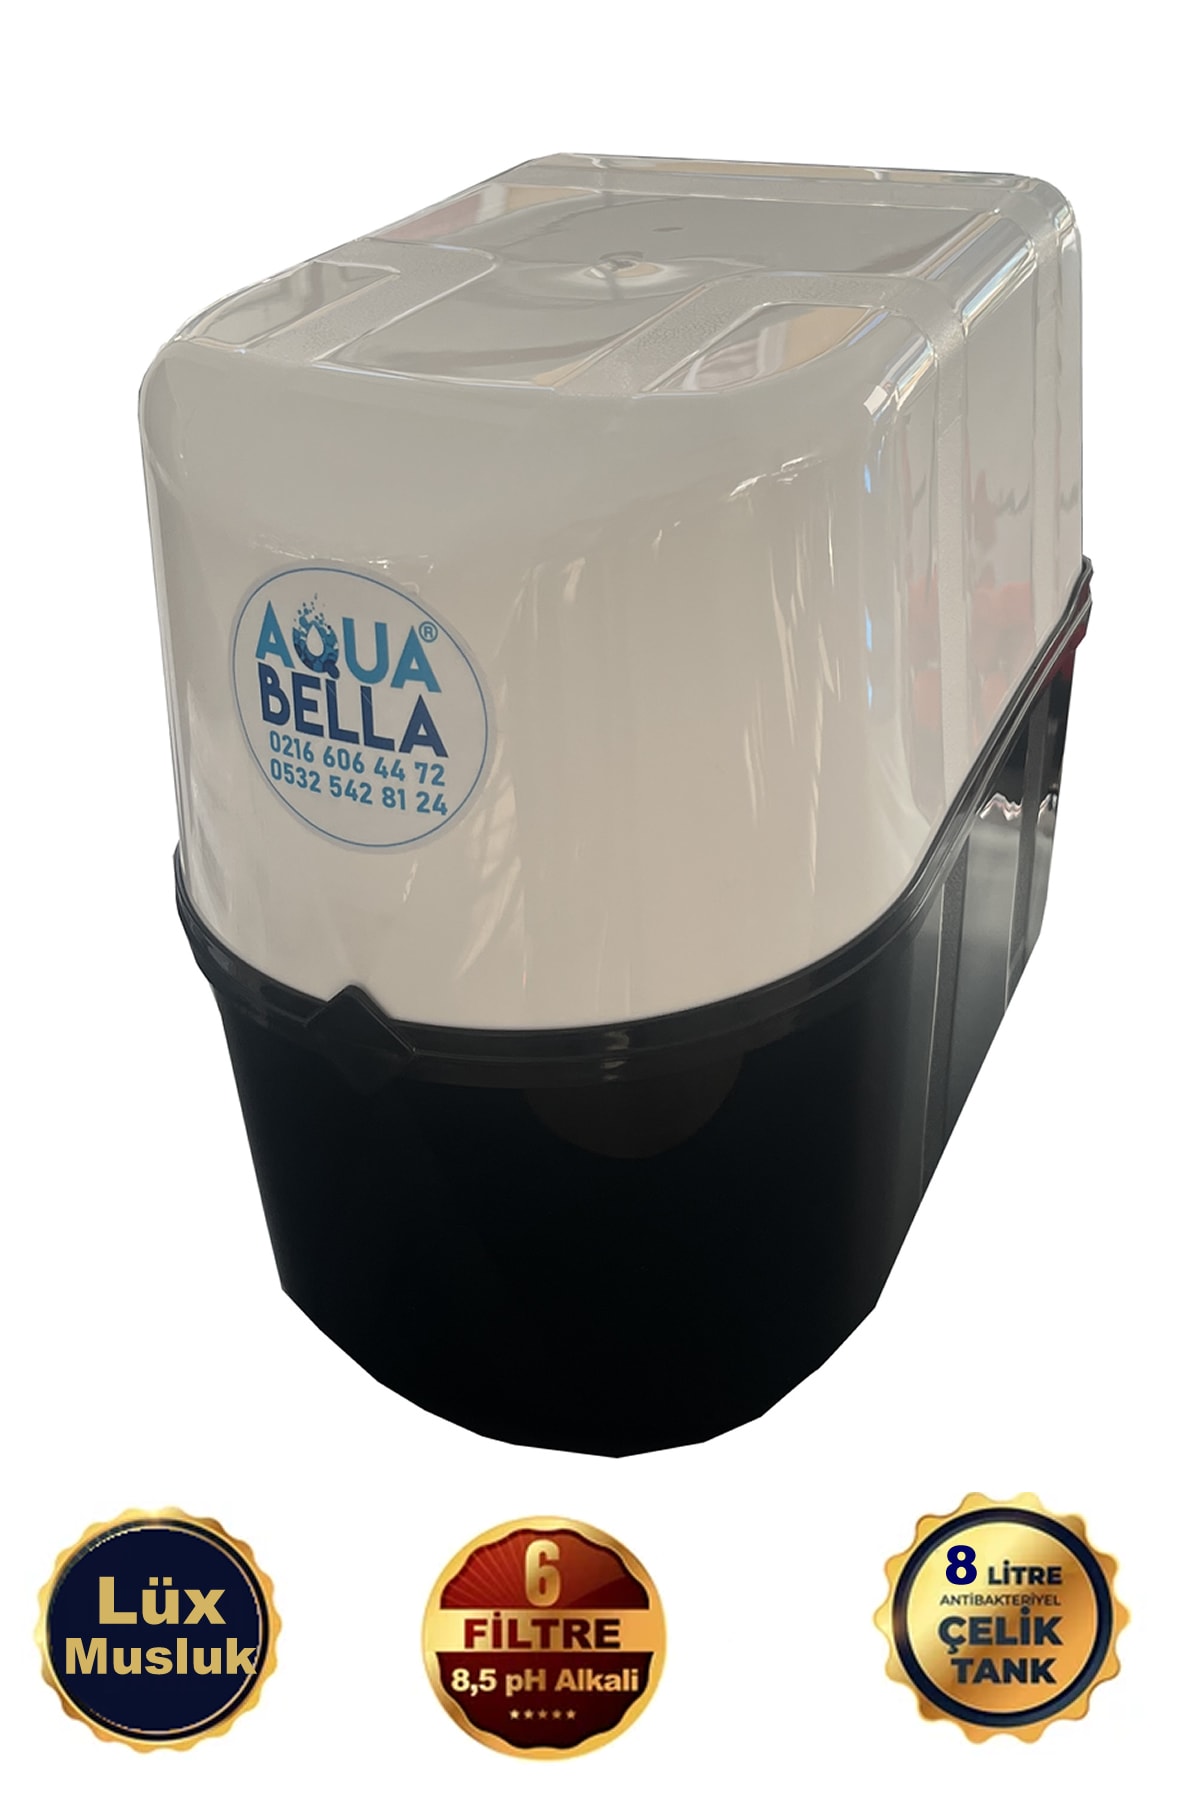 AQUA BELLA Gold Crystal 10 Aşamalı Çelik Tanklı Su Arıtma Cihazı - 1